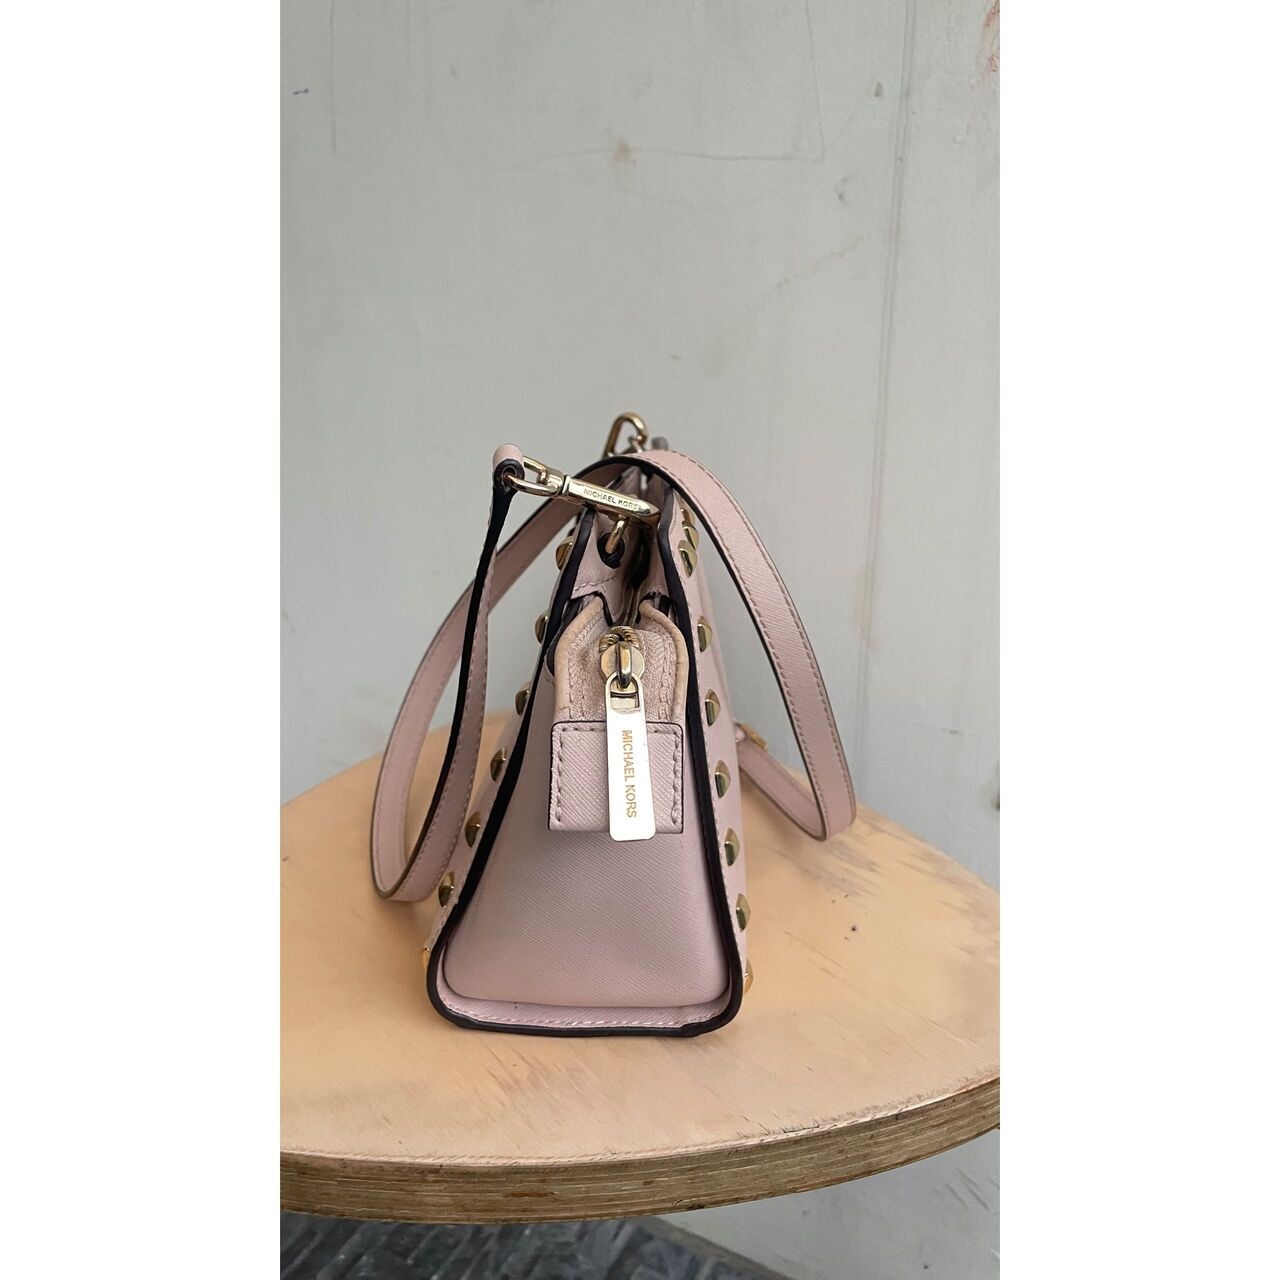 Michael Kors Selma Studded Soft Pink Sling Bag